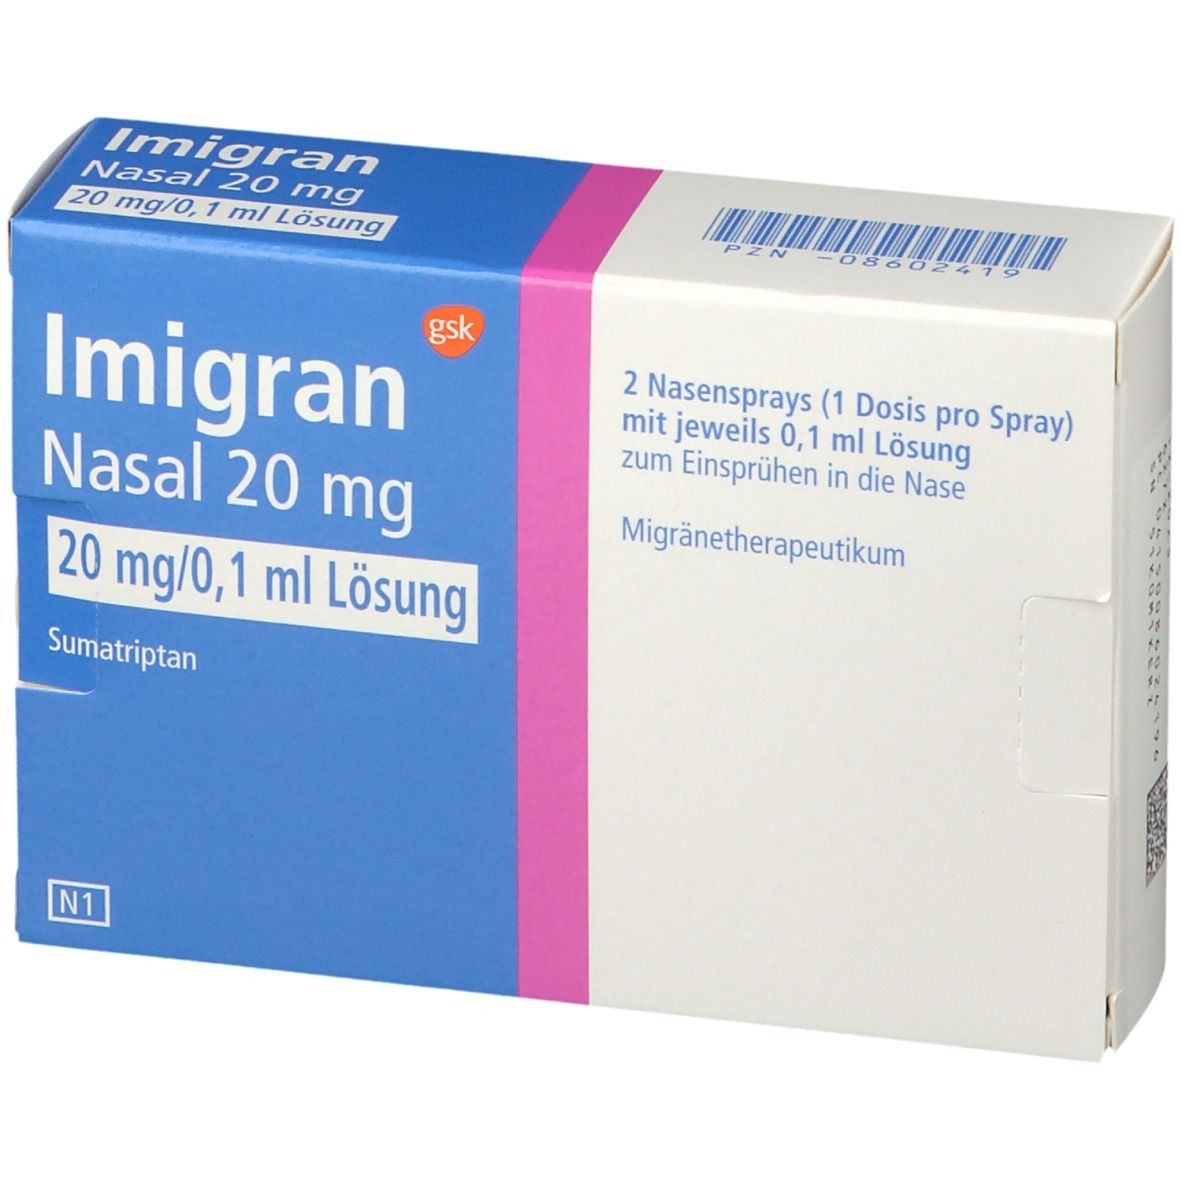 Imigran Nasal 20 mg